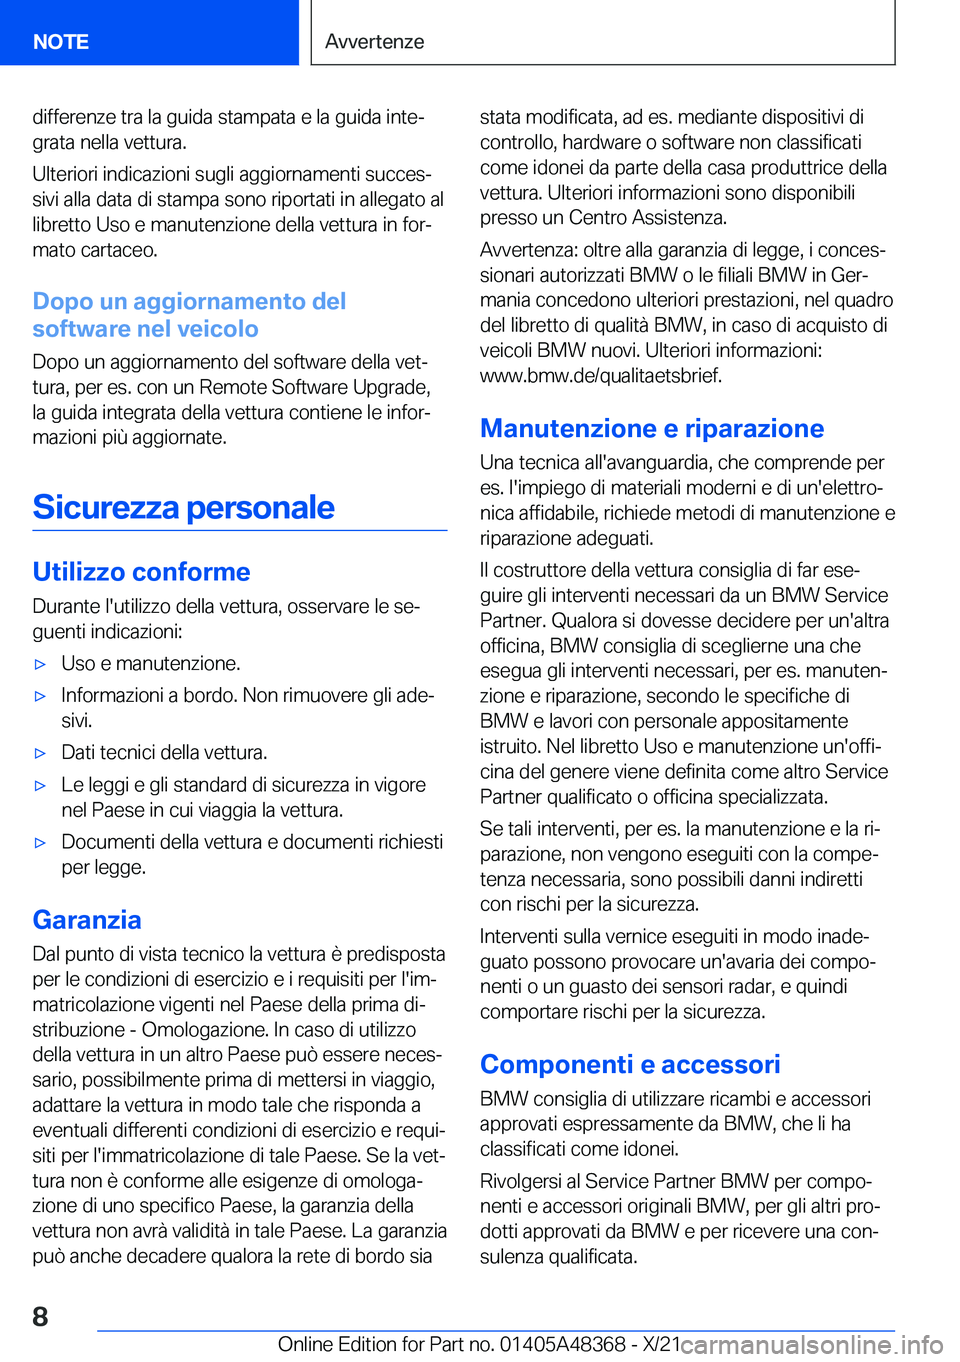 BMW X4 2022  Libretti Di Uso E manutenzione (in Italian) �d�i�f�f�e�r�e�n�z�e��t�r�a��l�a��g�u�i�d�a��s�t�a�m�p�a�t�a��e��l�a��g�u�i�d�a��i�n�t�eª�g�r�a�t�a��n�e�l�l�a��v�e�t�t�u�r�a�.
�U�l�t�e�r�i�o�r�i��i�n�d�i�c�a�z�i�o�n�i��s�u�g�l�i��a�g